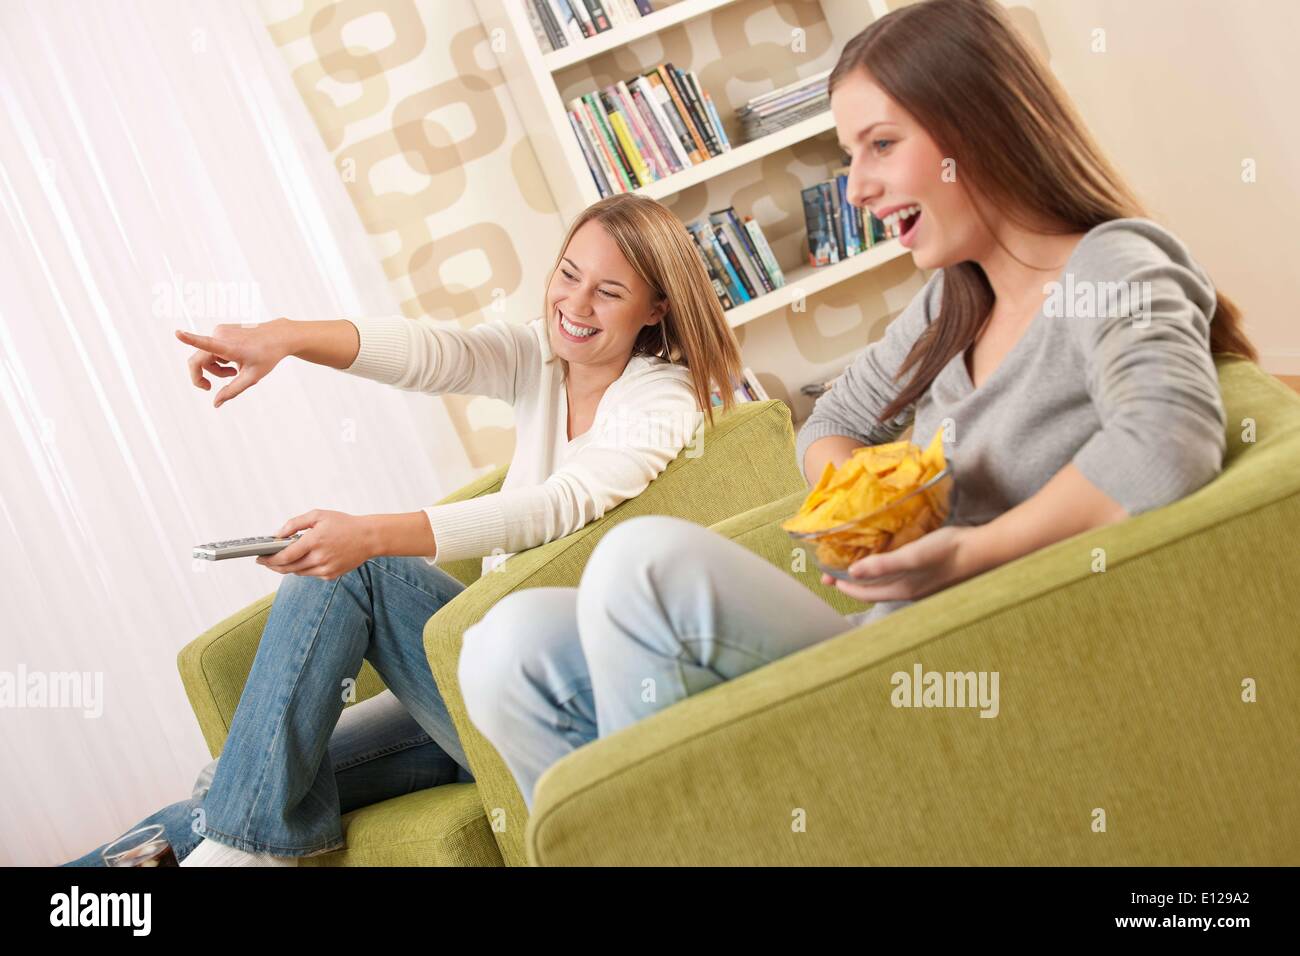 06 novembre 2009 - 6 novembre 2009 - Deux élèves - une adolescente à regarder la télévision et manger des chips dans un salon moderne Banque D'Images